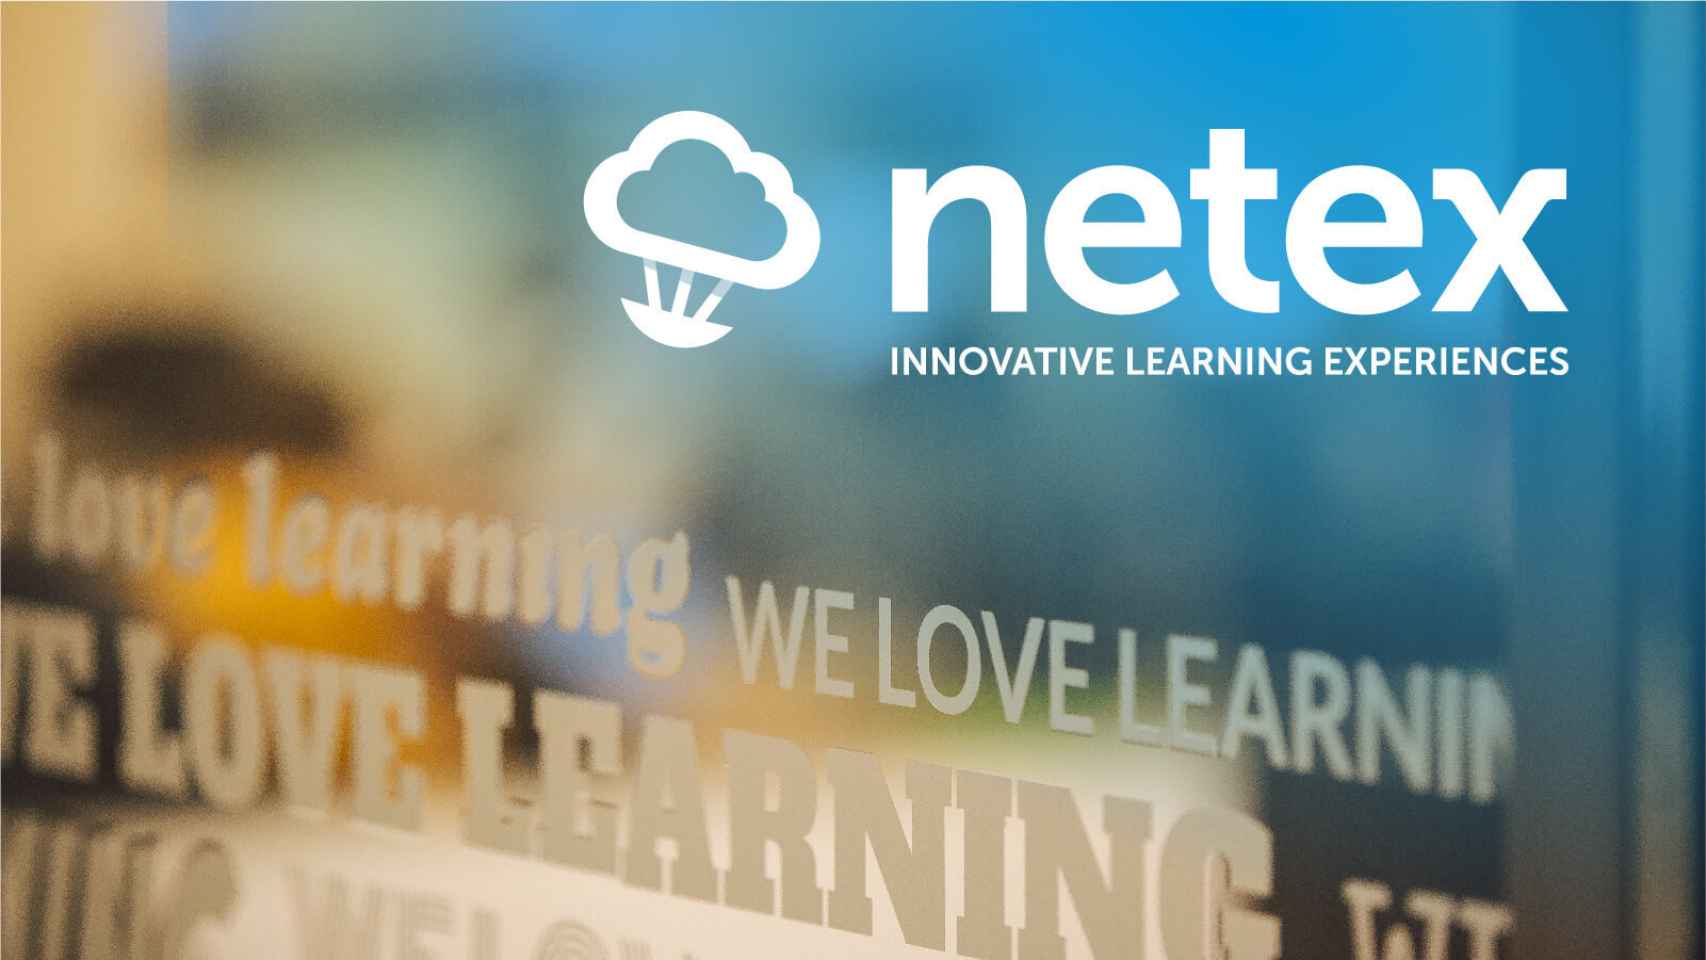 Netex se dispara un 25% y marca nuevos máximos históricos